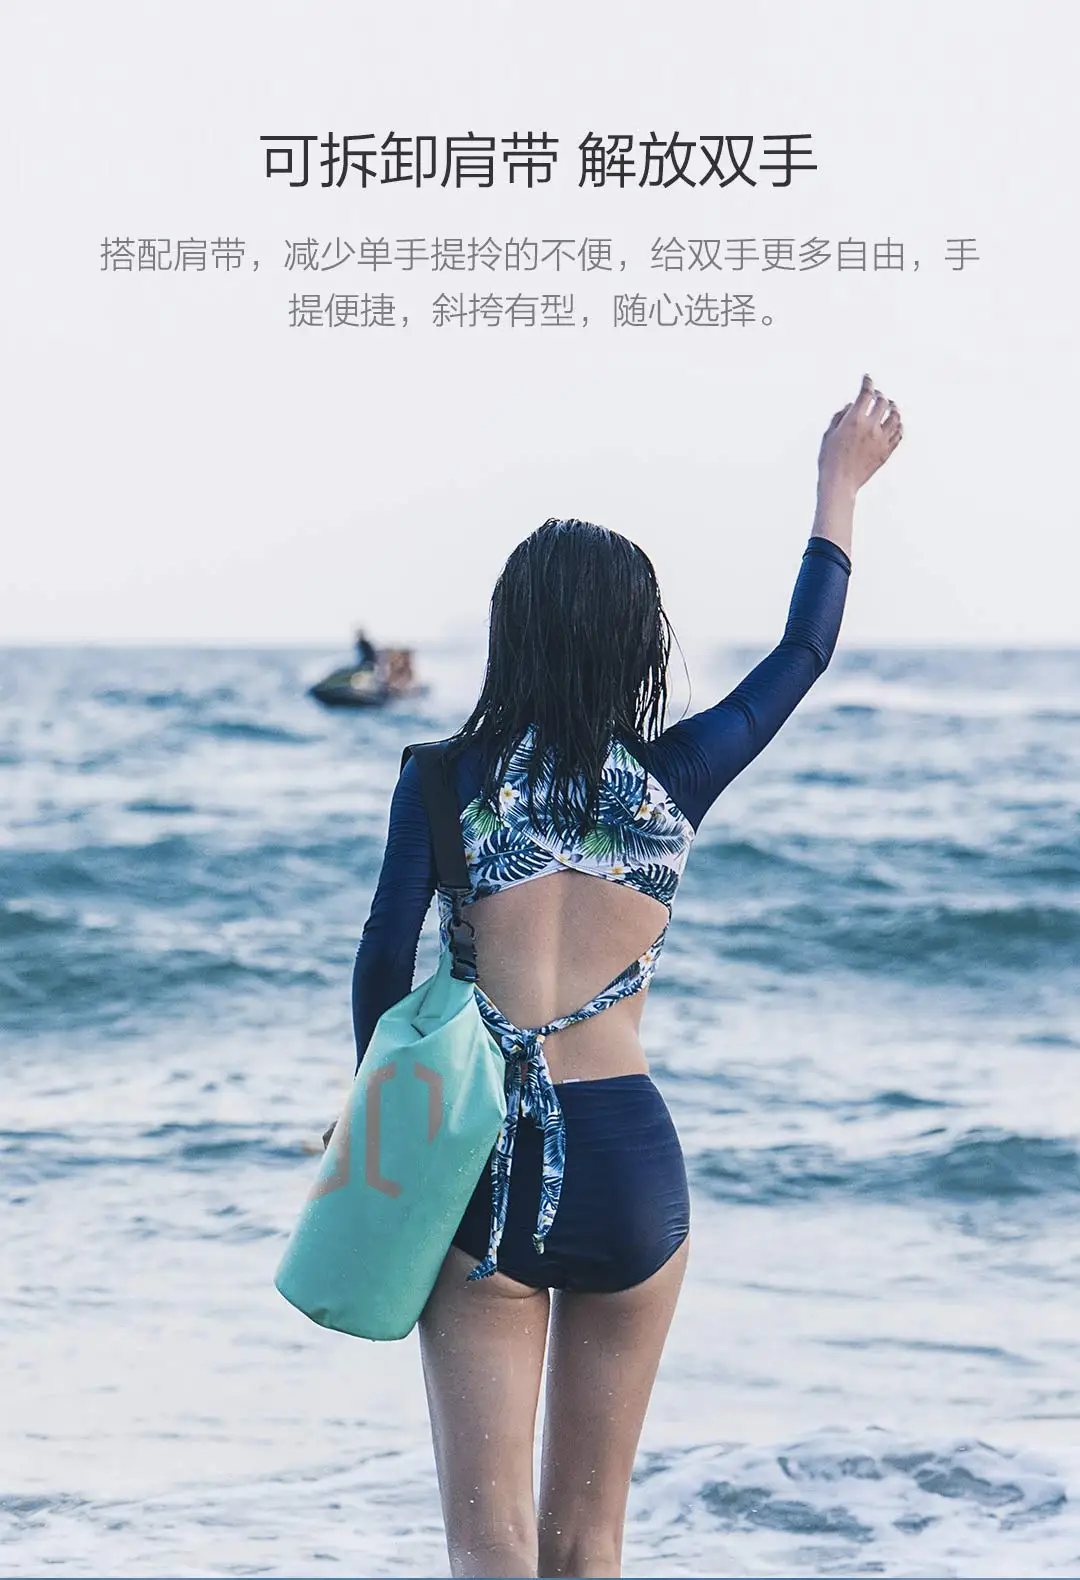 Xiaomi 90 забавная спортивная сумка рюкзак 10L ПВХ водонепроницаемая сухая влажная сумка-ведро для занятий спортом на открытом воздухе плаванье рафтинг Парусная сумка для хранения